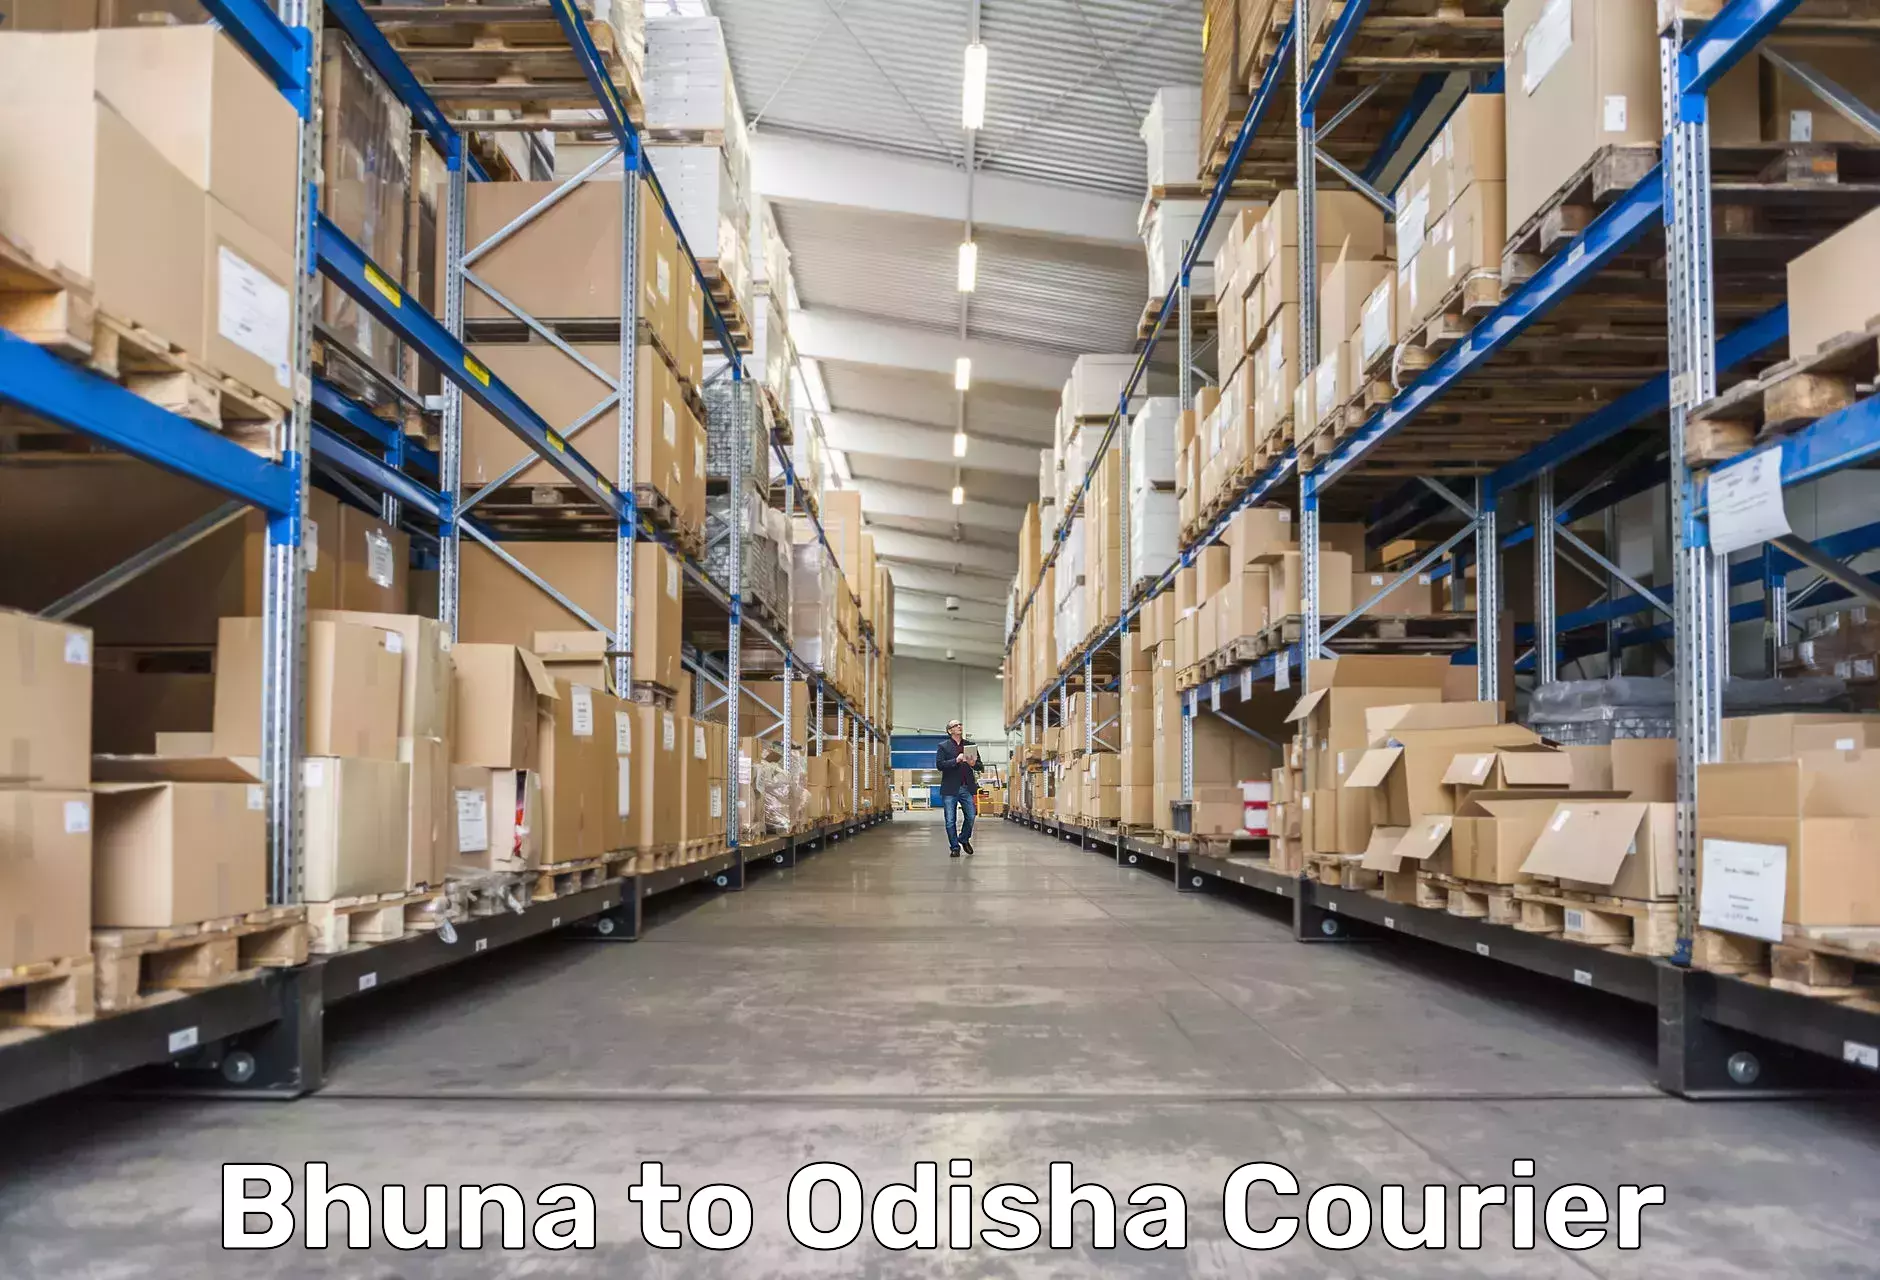 24/7 courier service Bhuna to Paralakhemundi